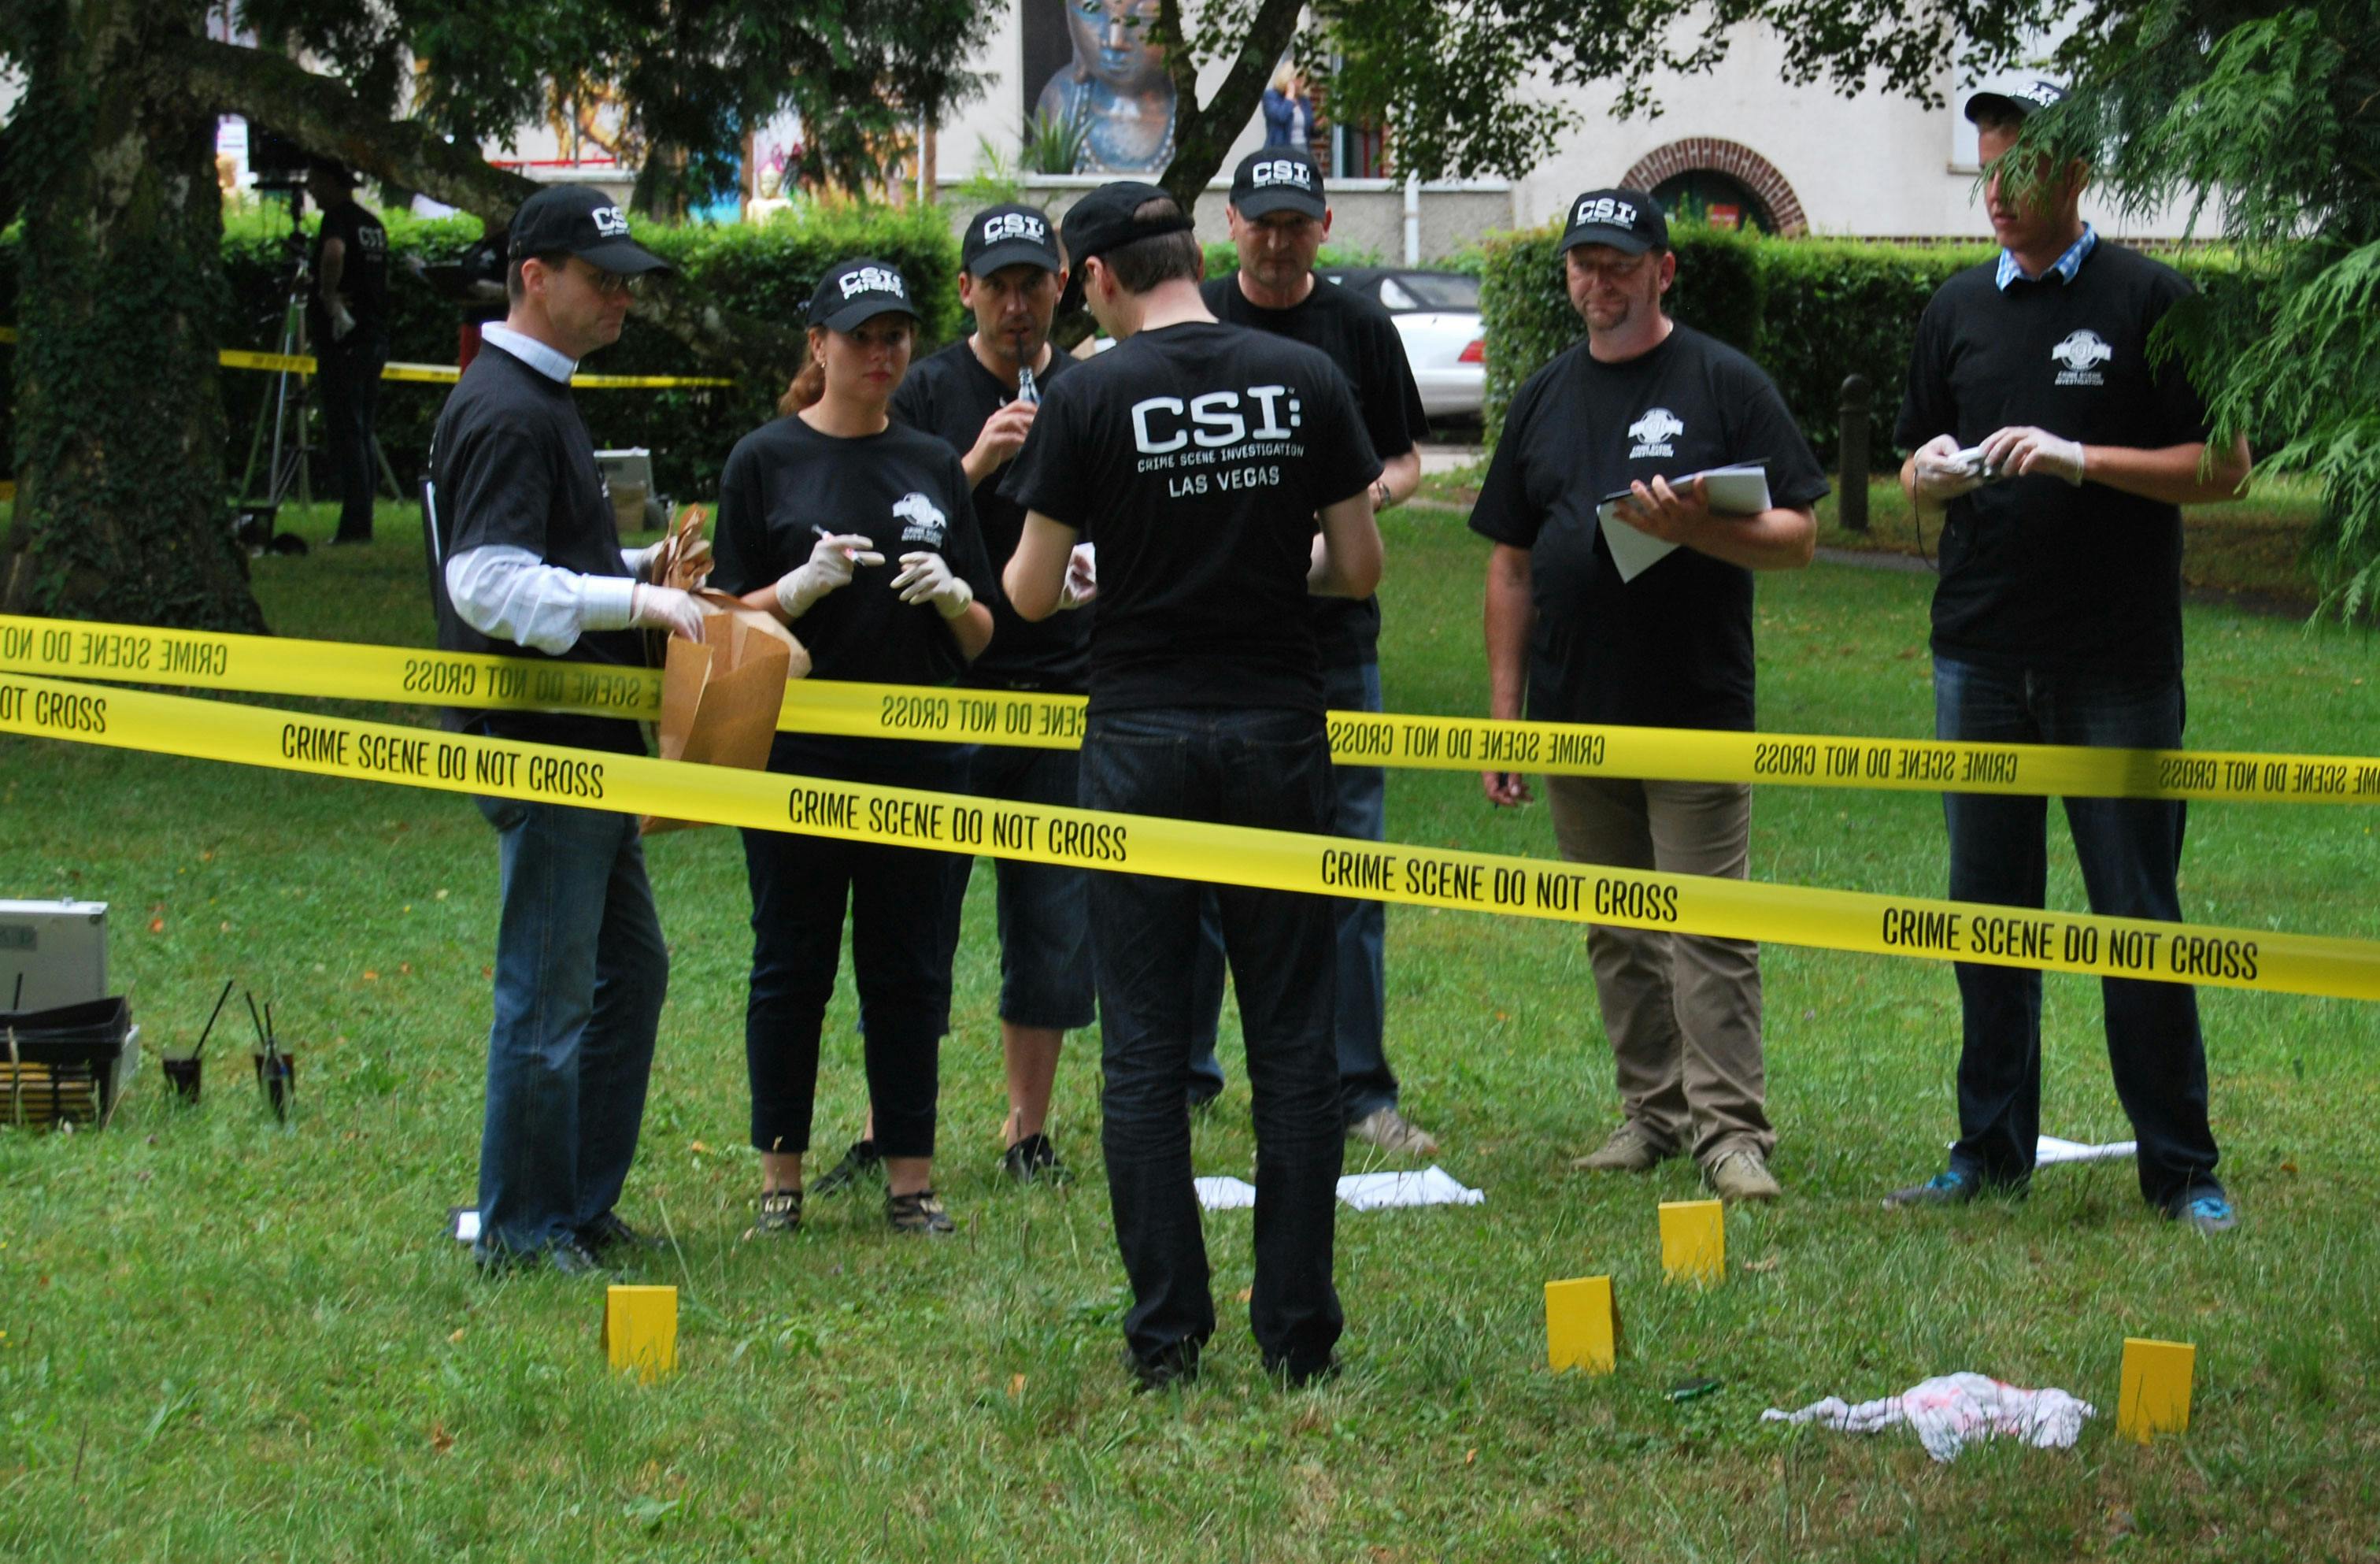 CSI Ermittlung | 5 Stunden um den Täter zu finden